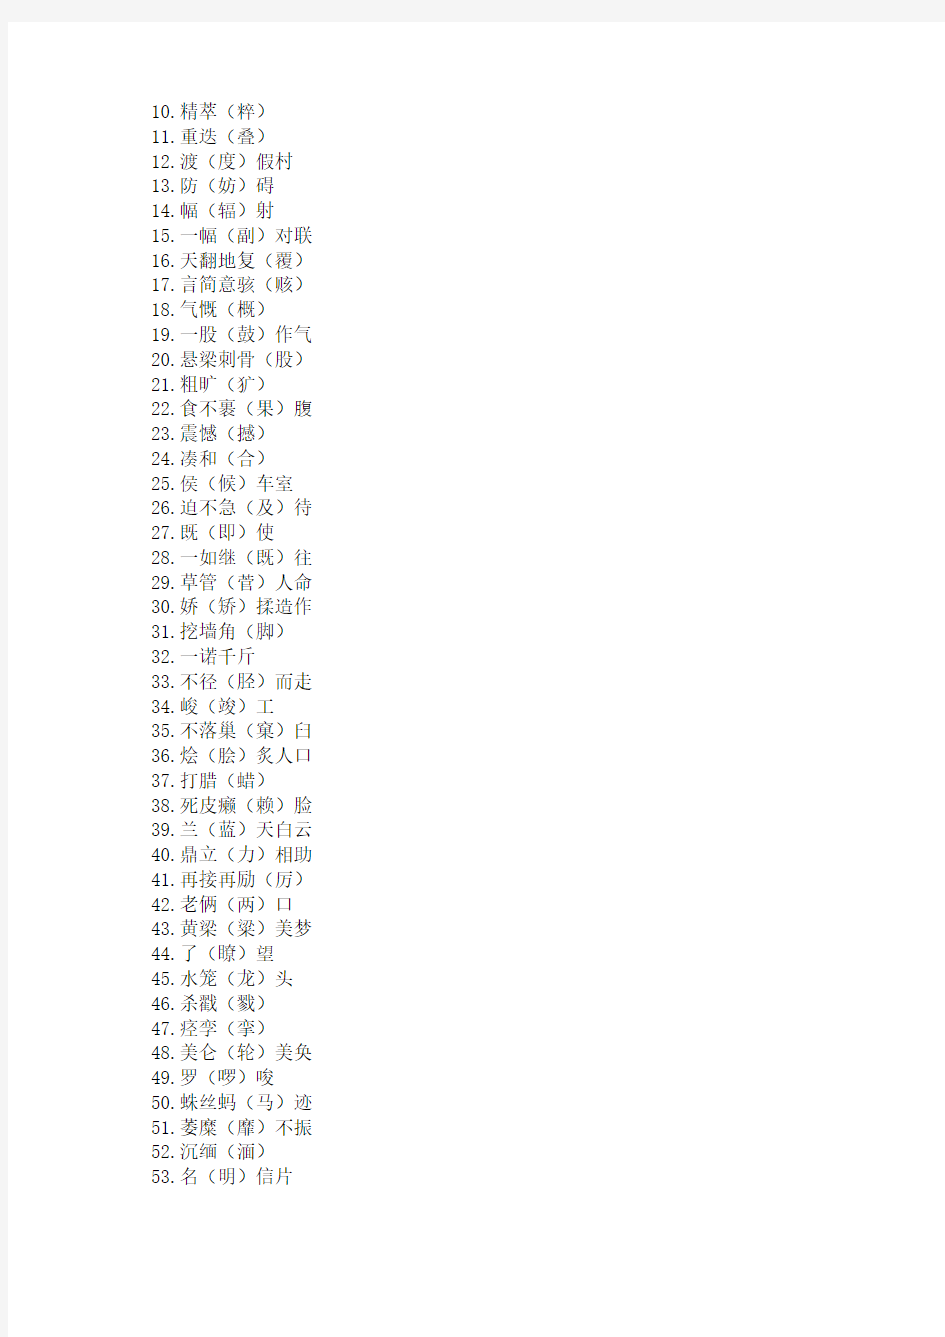 当代汉语出版物中最常见的100个别字